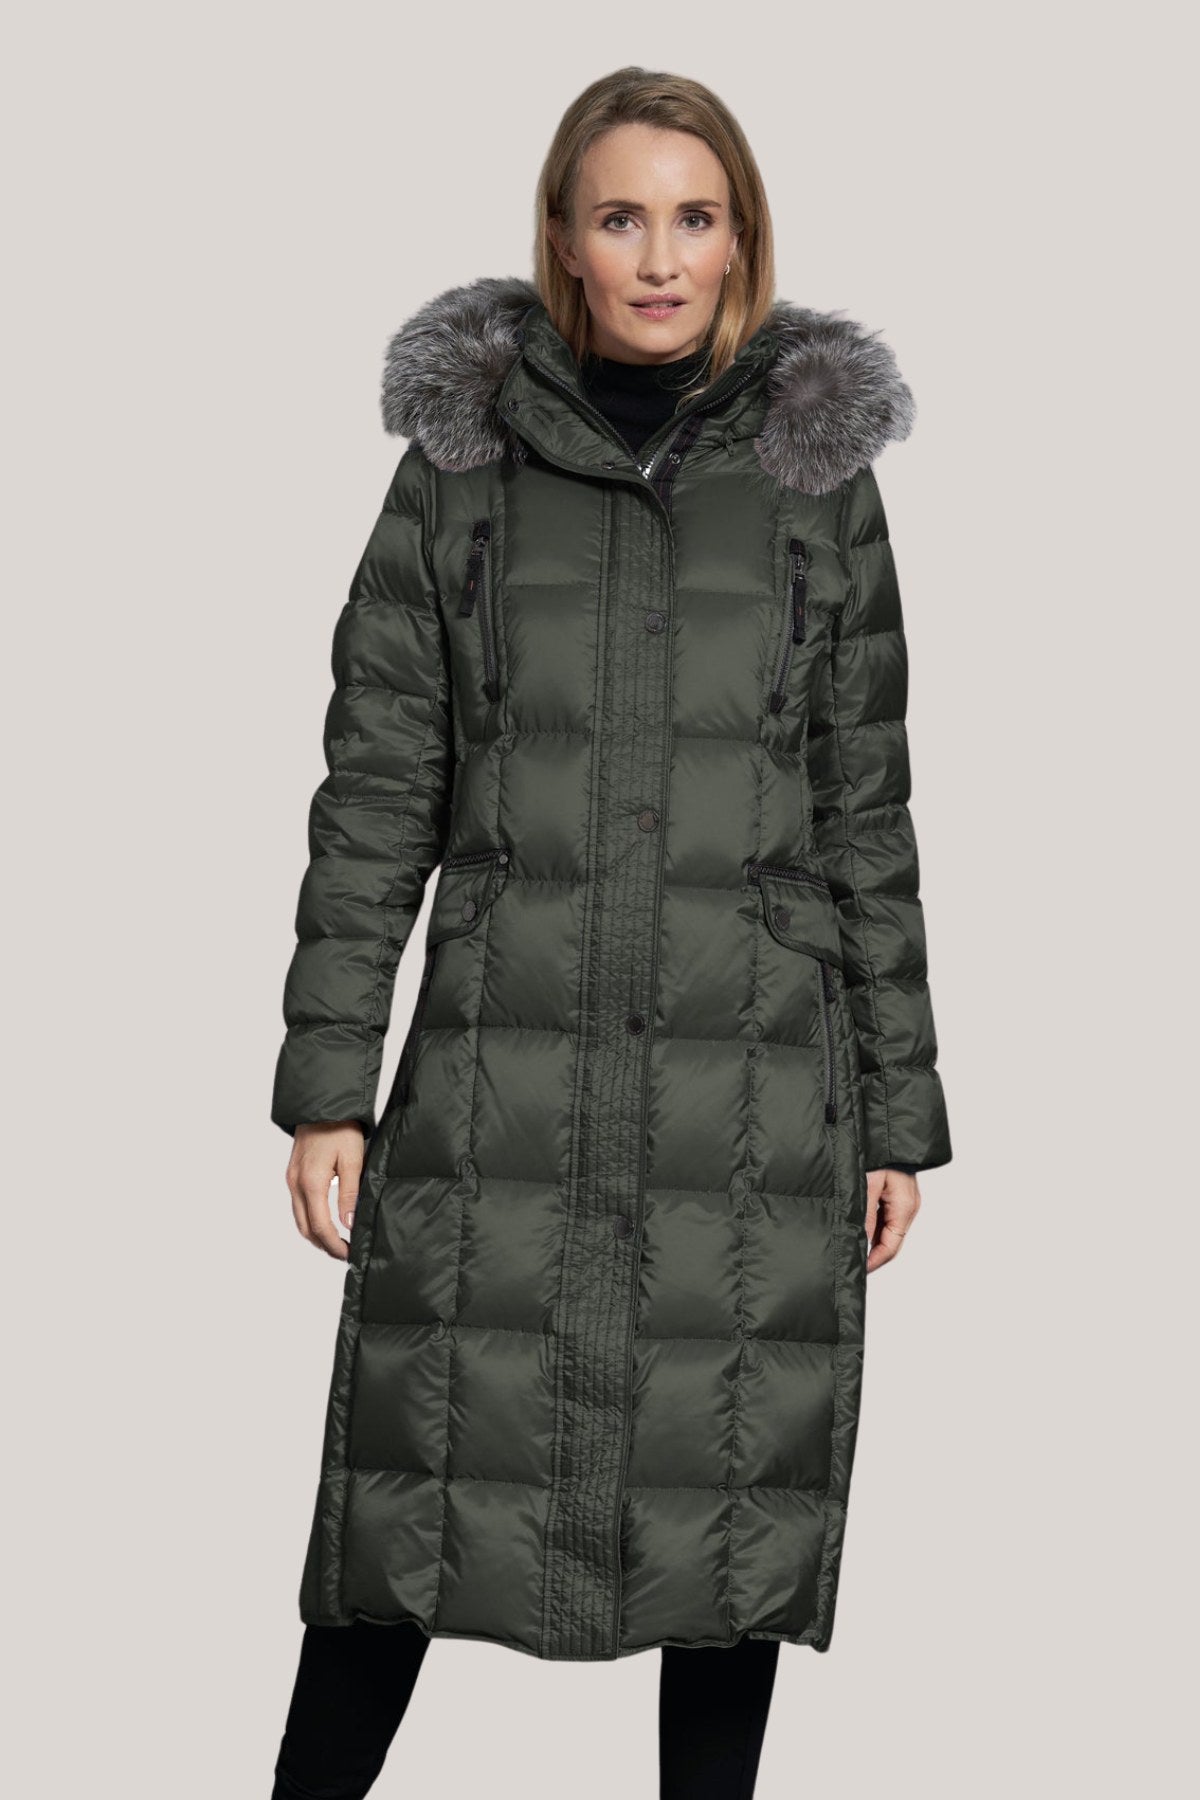 Puffer Coats – LORNE'S COATS